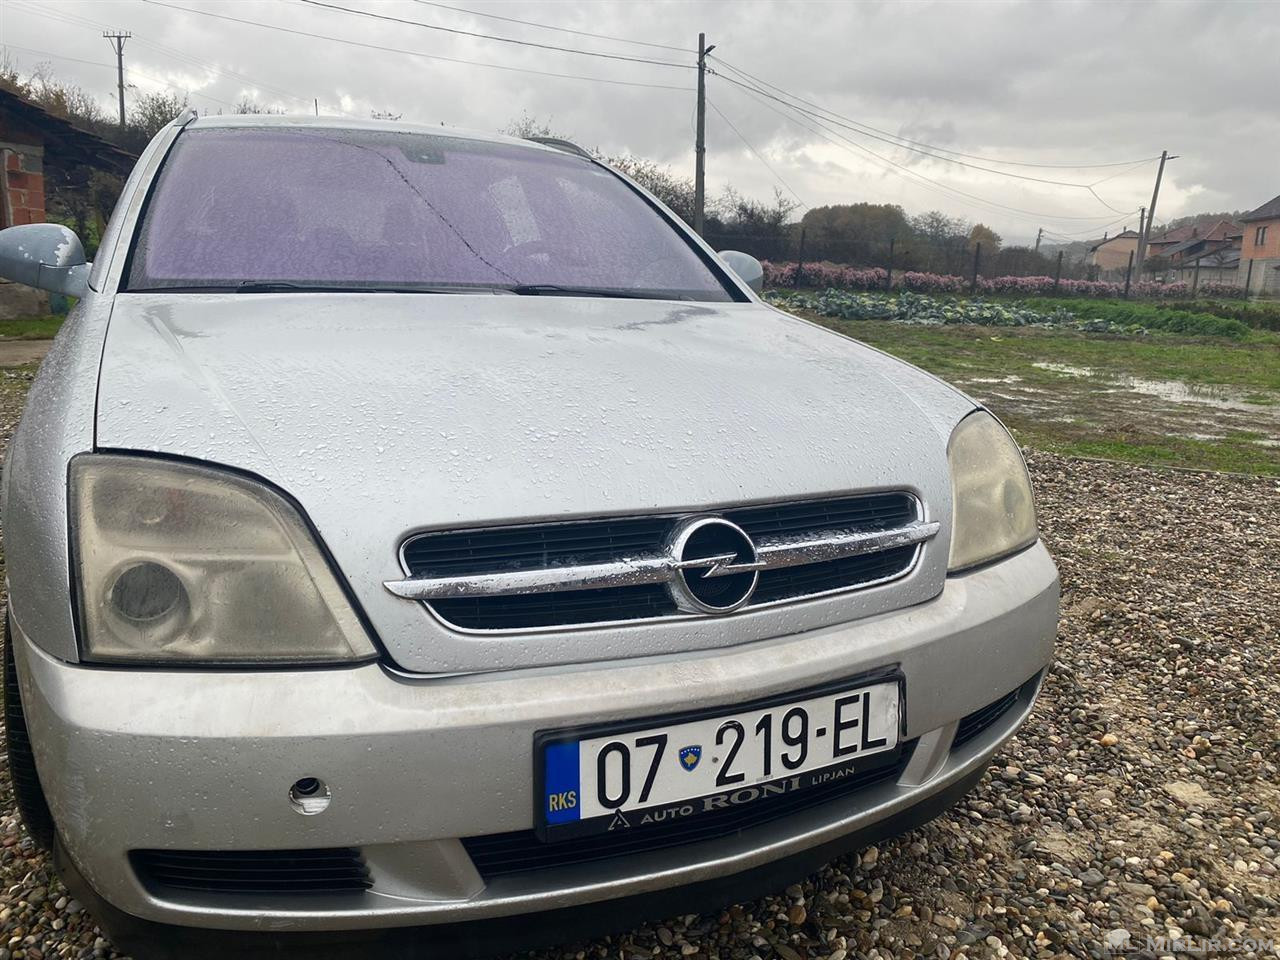 Opel signum